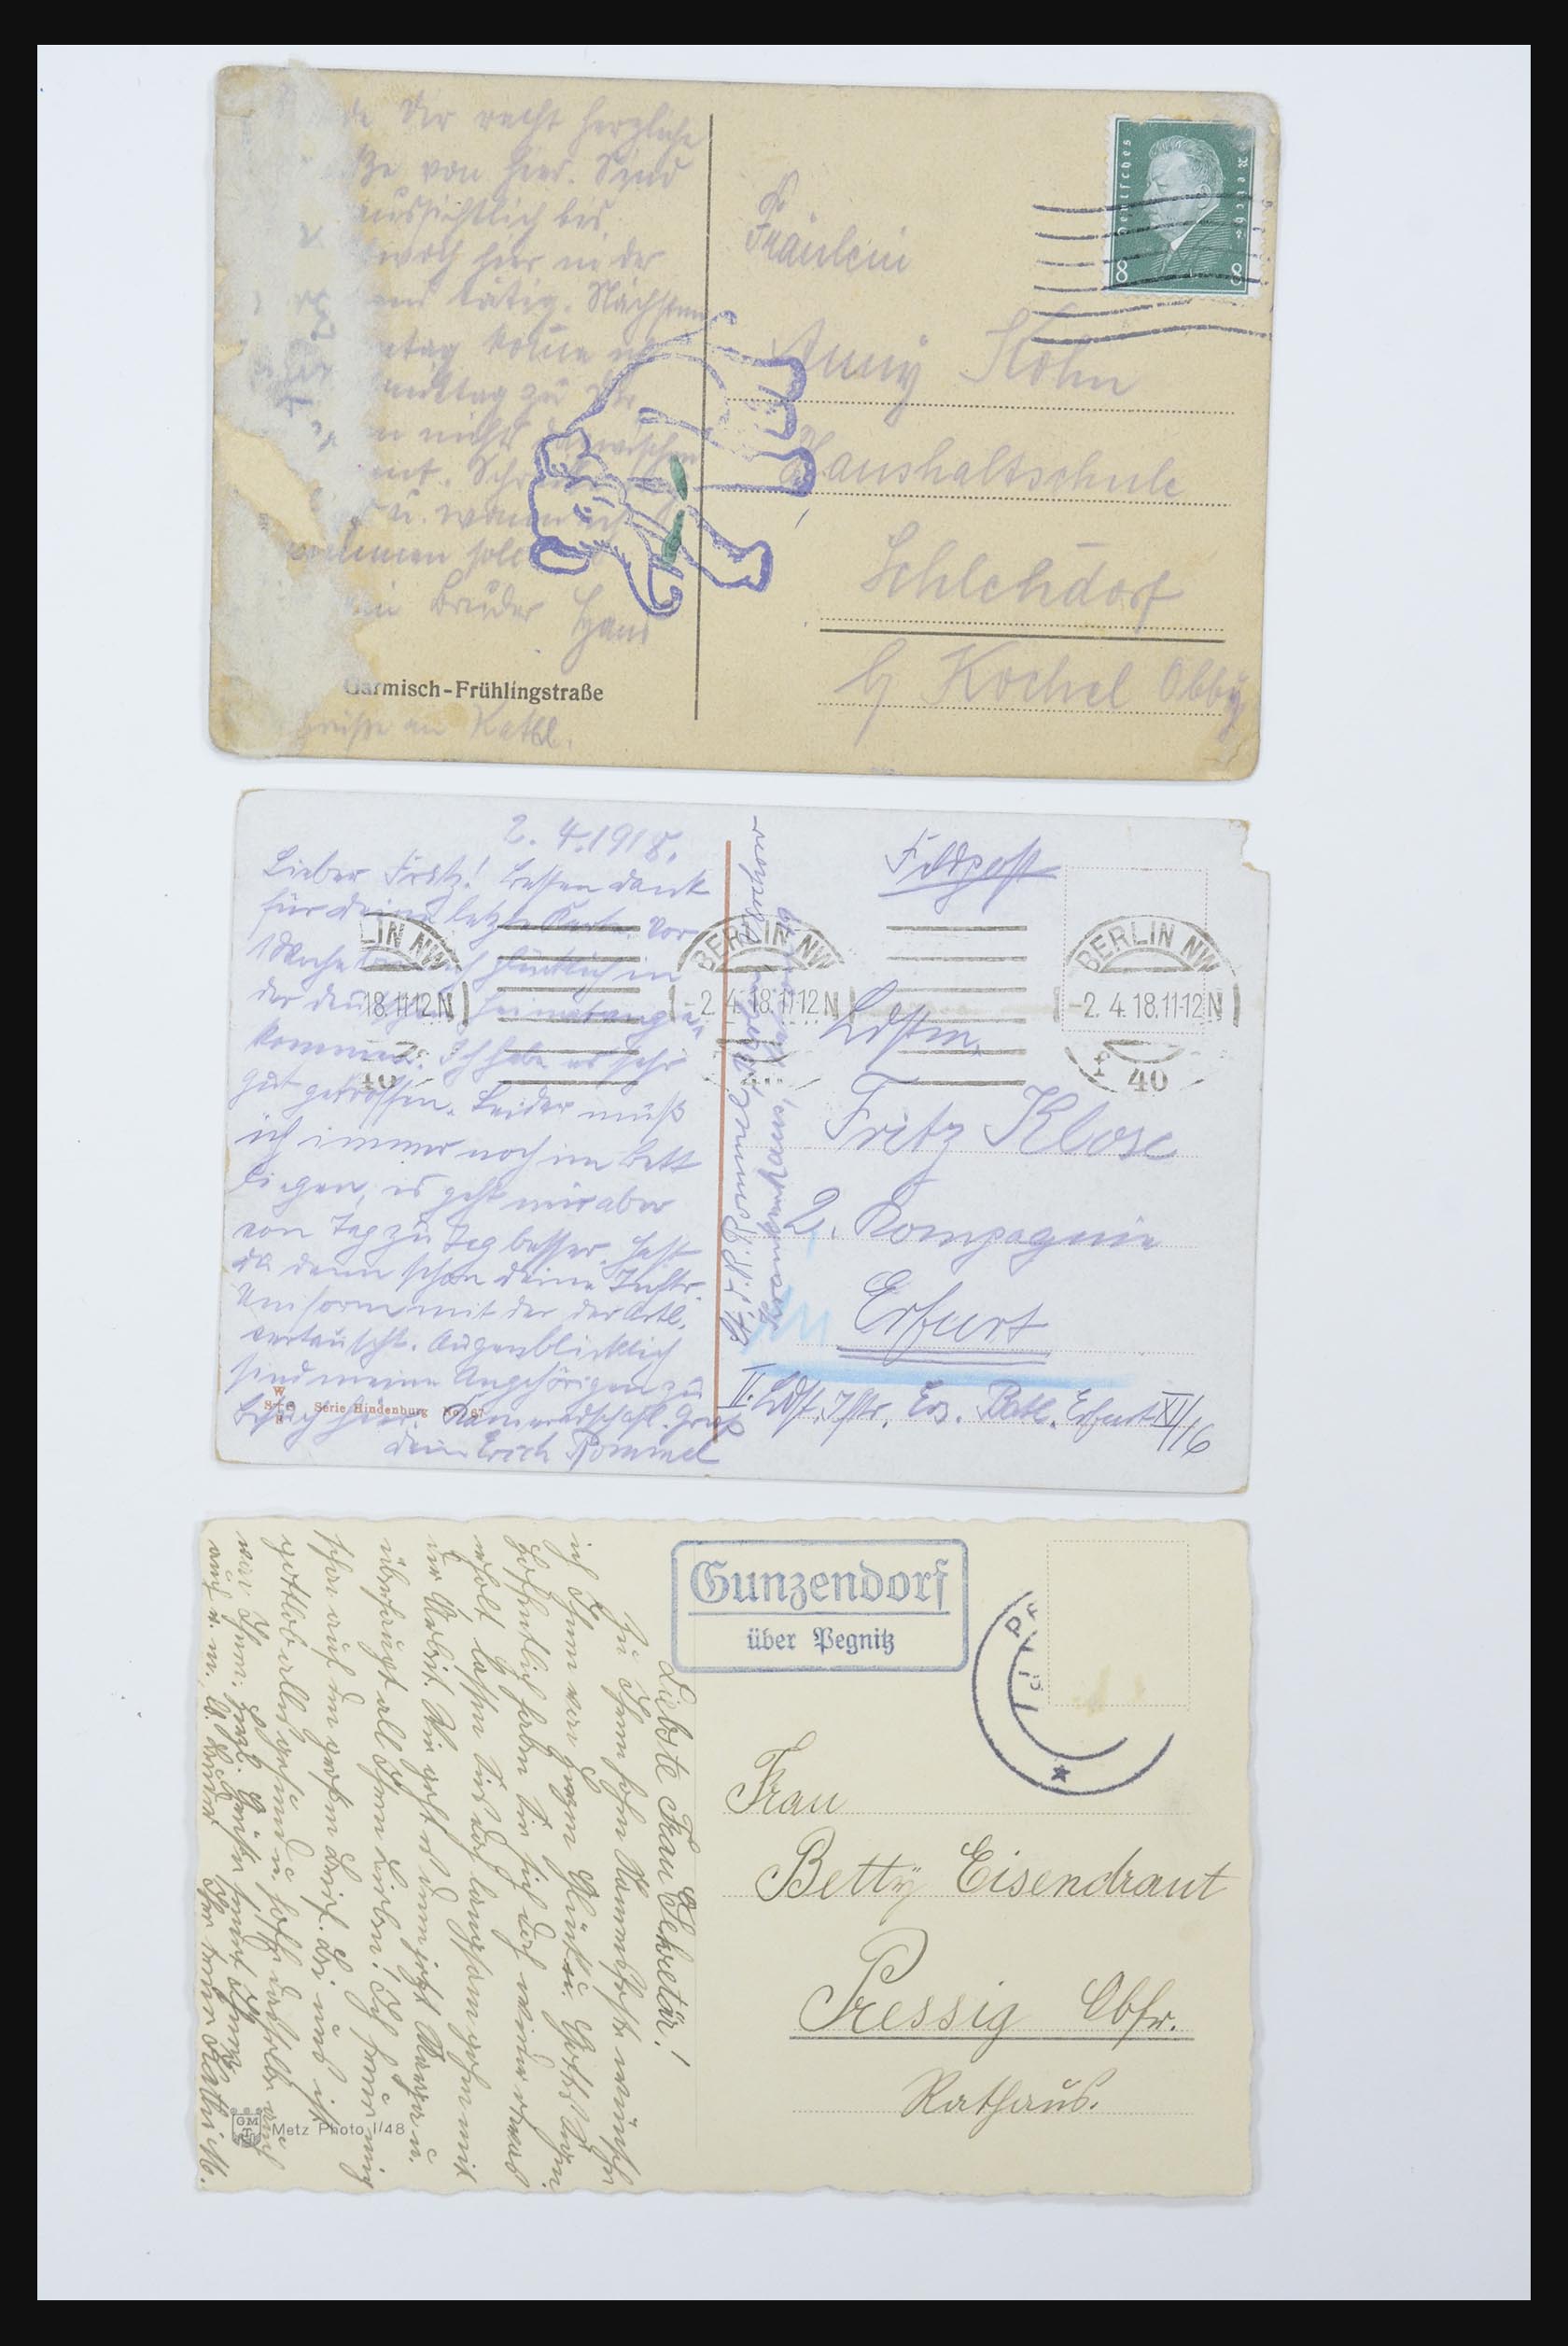 31952 059 - 31952 German Reich cards.